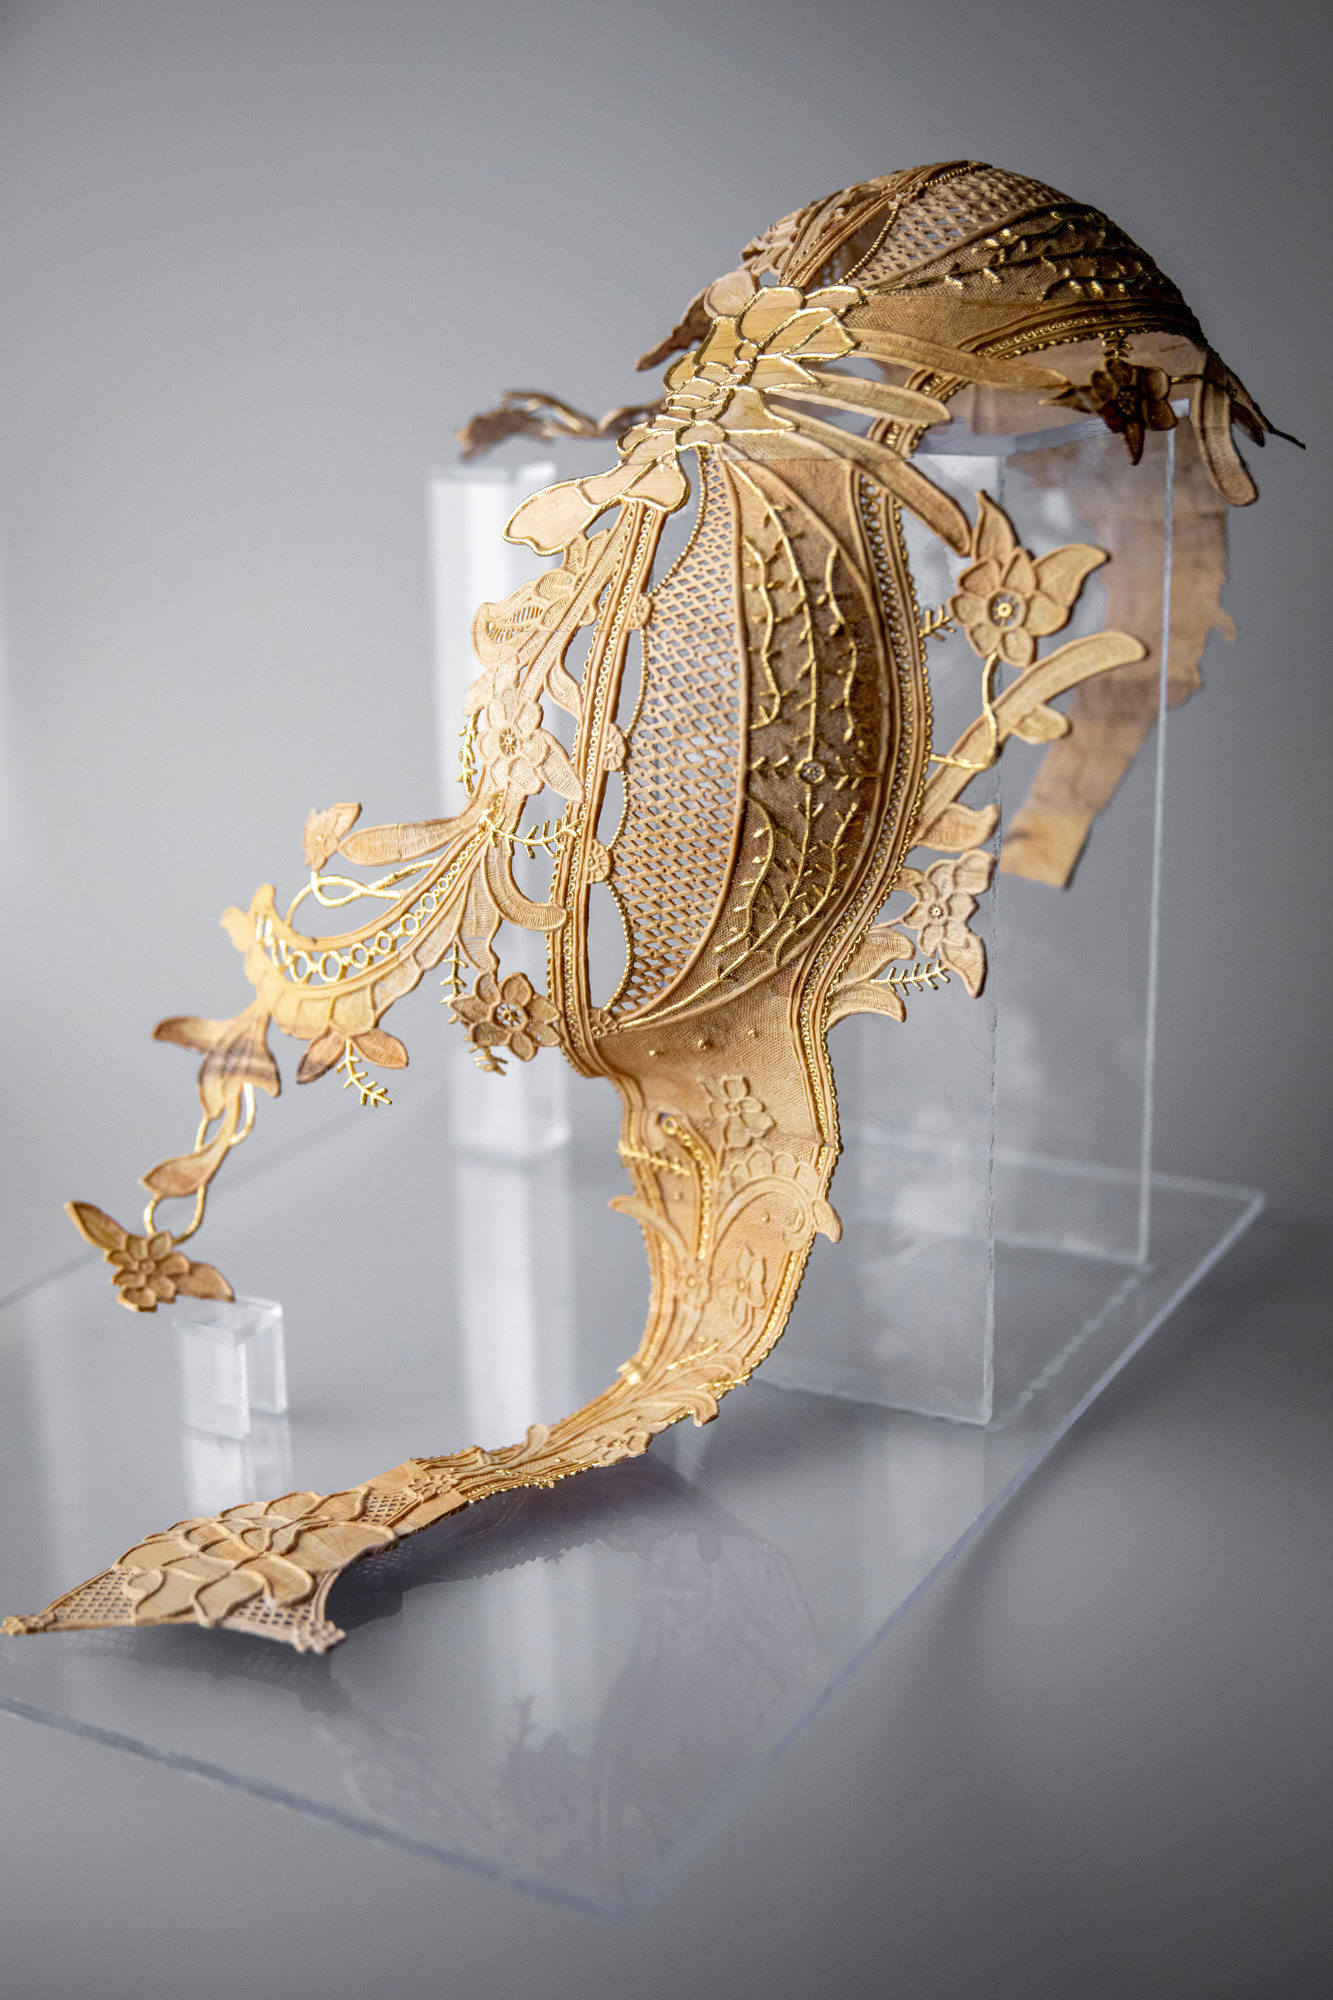 Lingerie en dentelle, sculpture trompe-l'œil - bois, feuille d'or - 300 x 400 x 400 mm - 2019